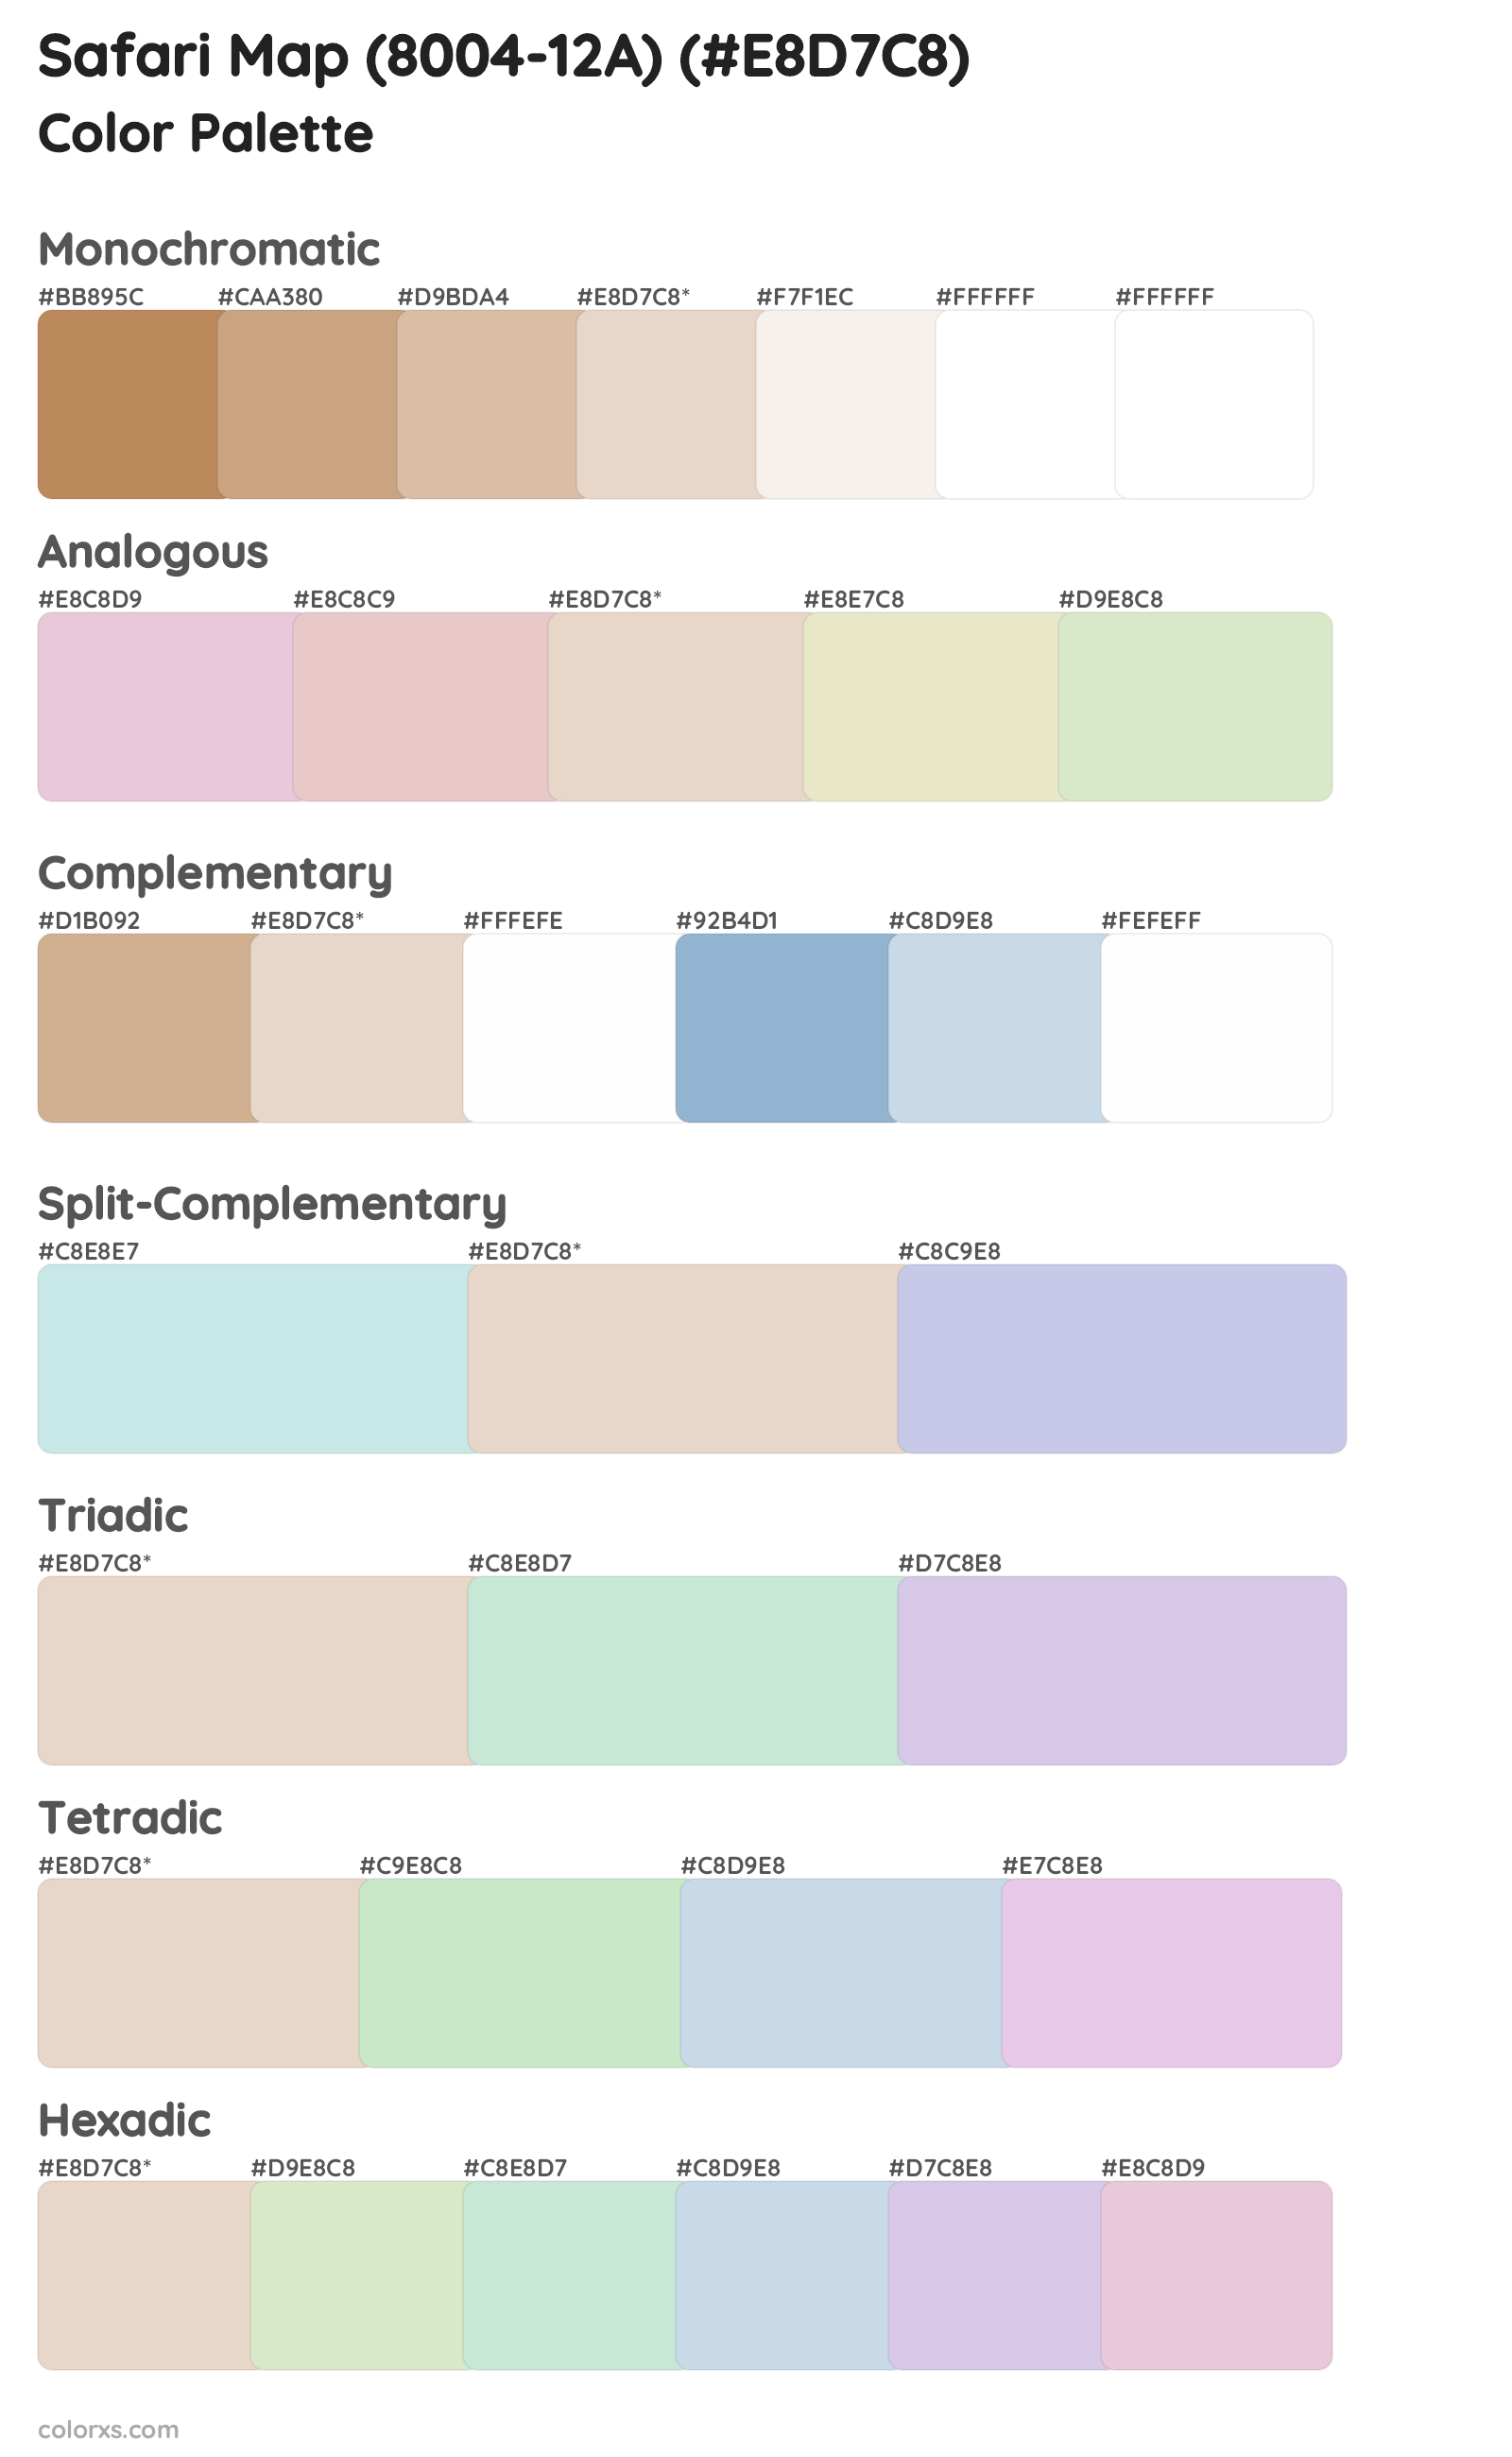 Safari Map (8004-12A) Color Scheme Palettes